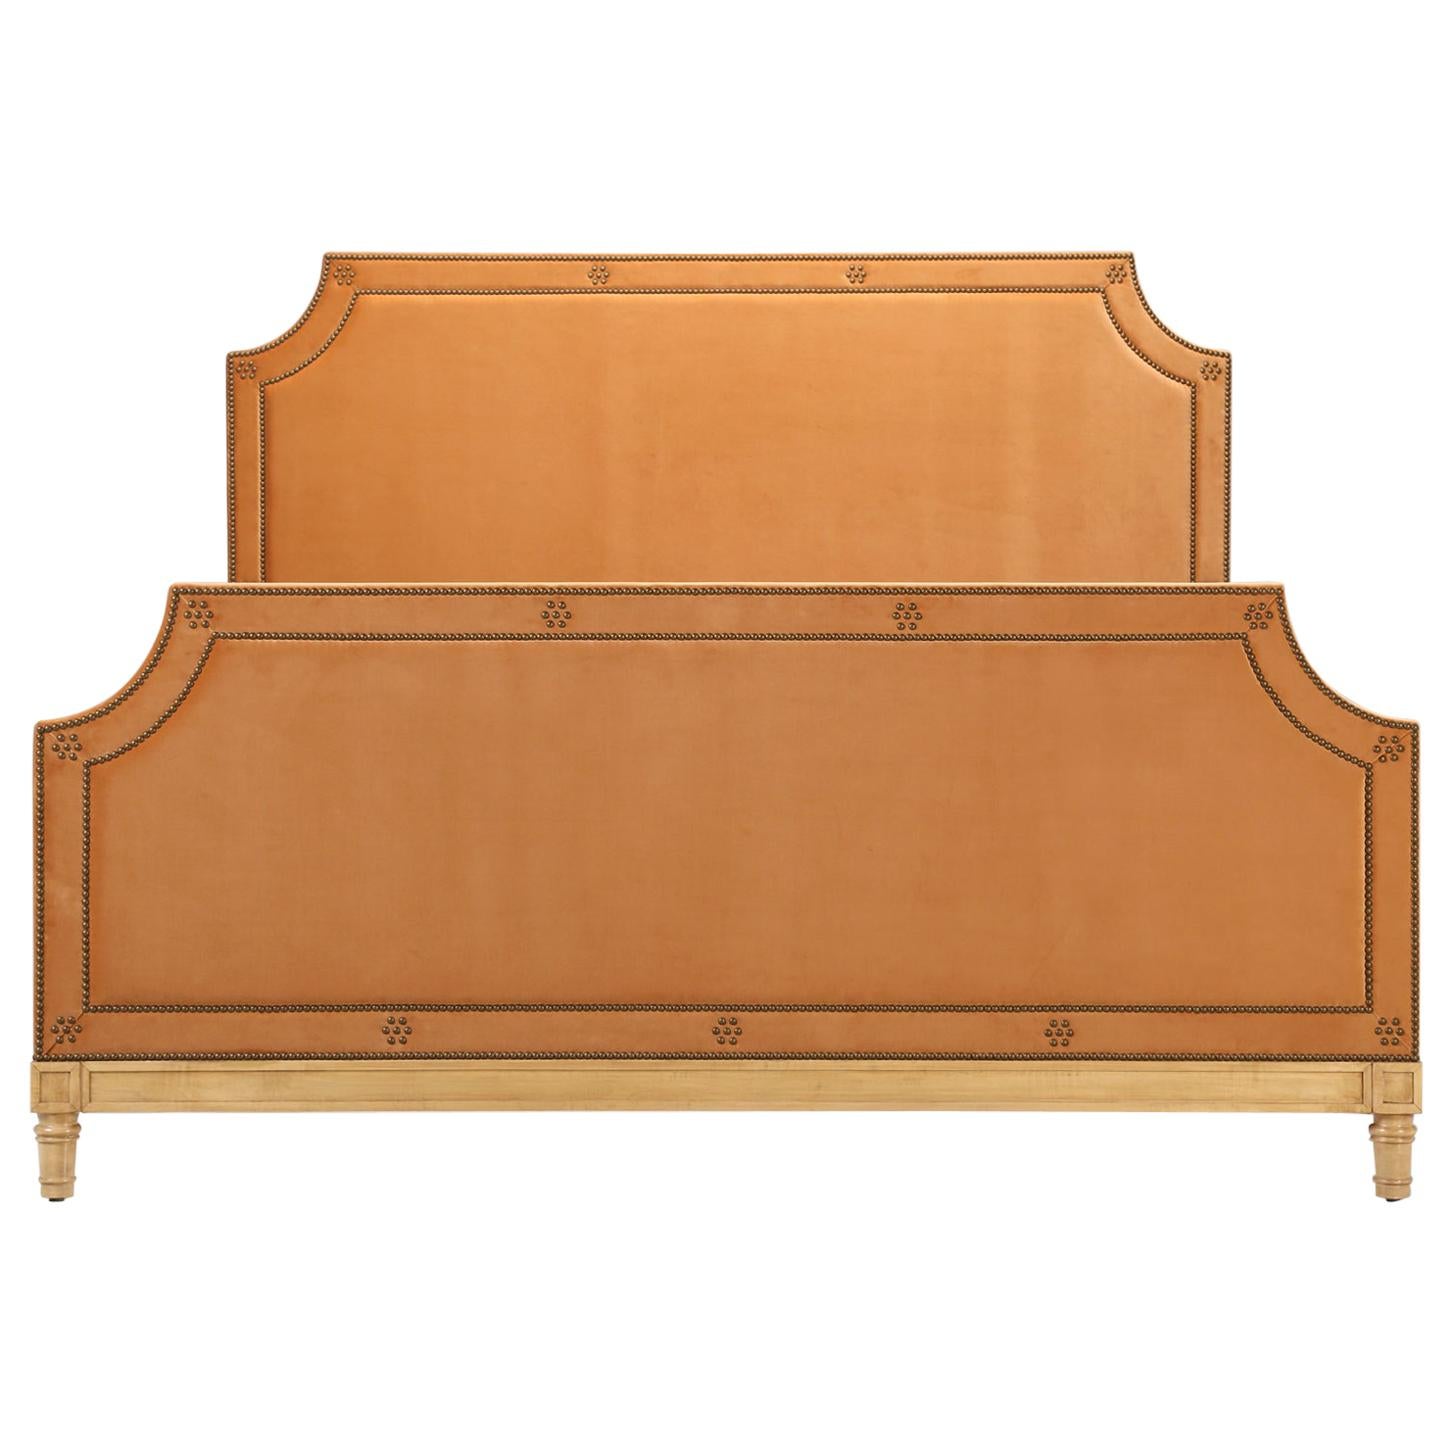 Maßgefertigtes, auf Bestellung gefertigtes Old Plank's King Size Bett, erhältlich in jeder Größe und COM